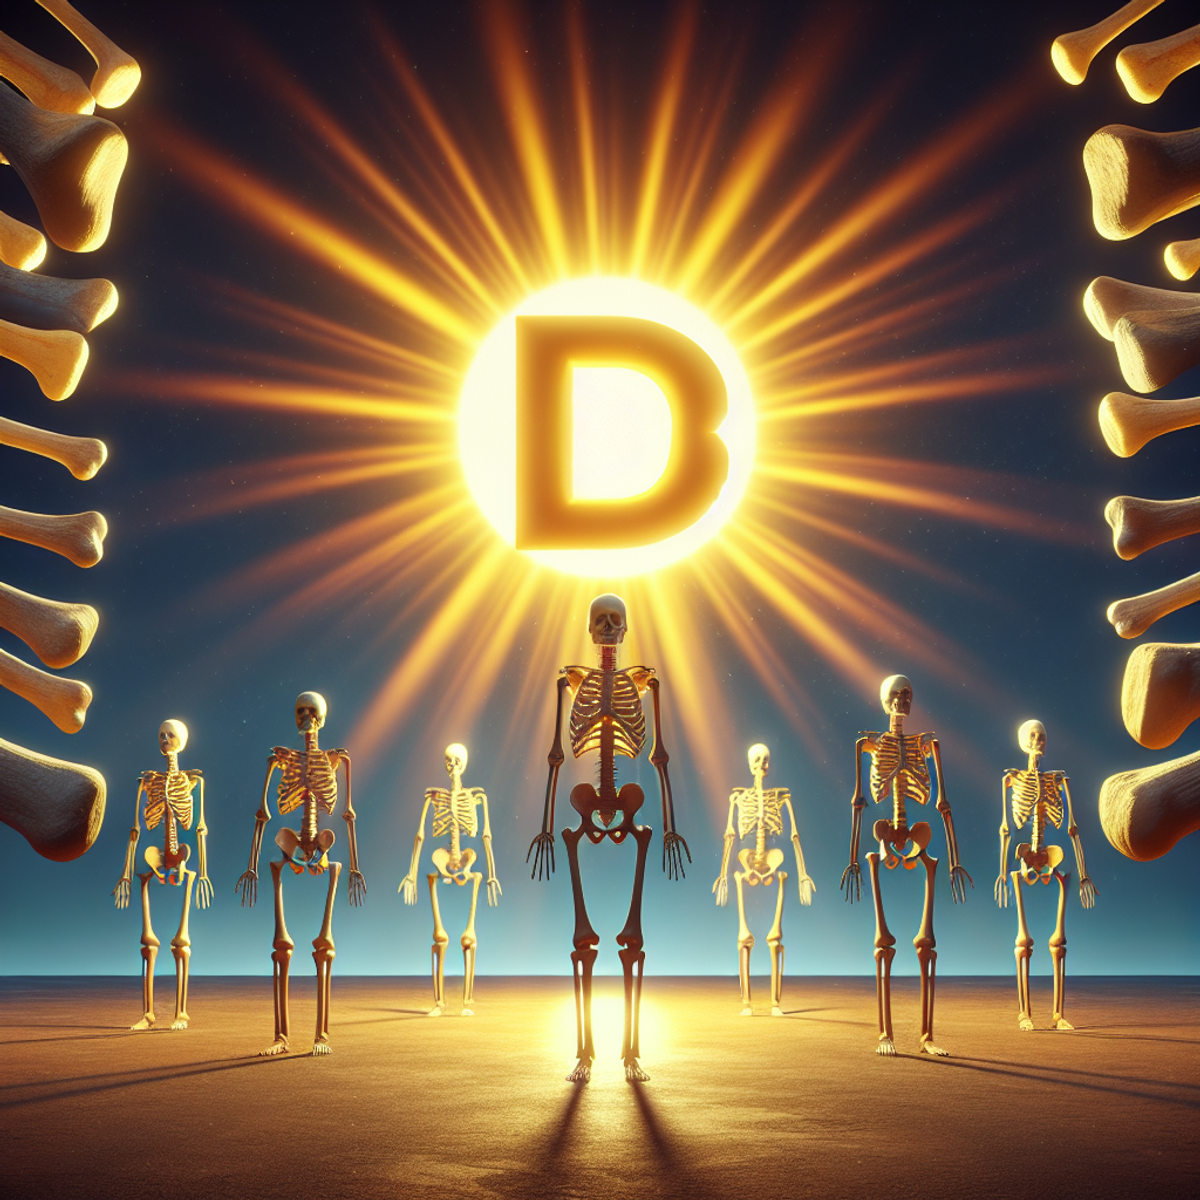 Słońce świeci na symbolu D3, emitując promienie w kierunku zdrowych ludzkich kości.